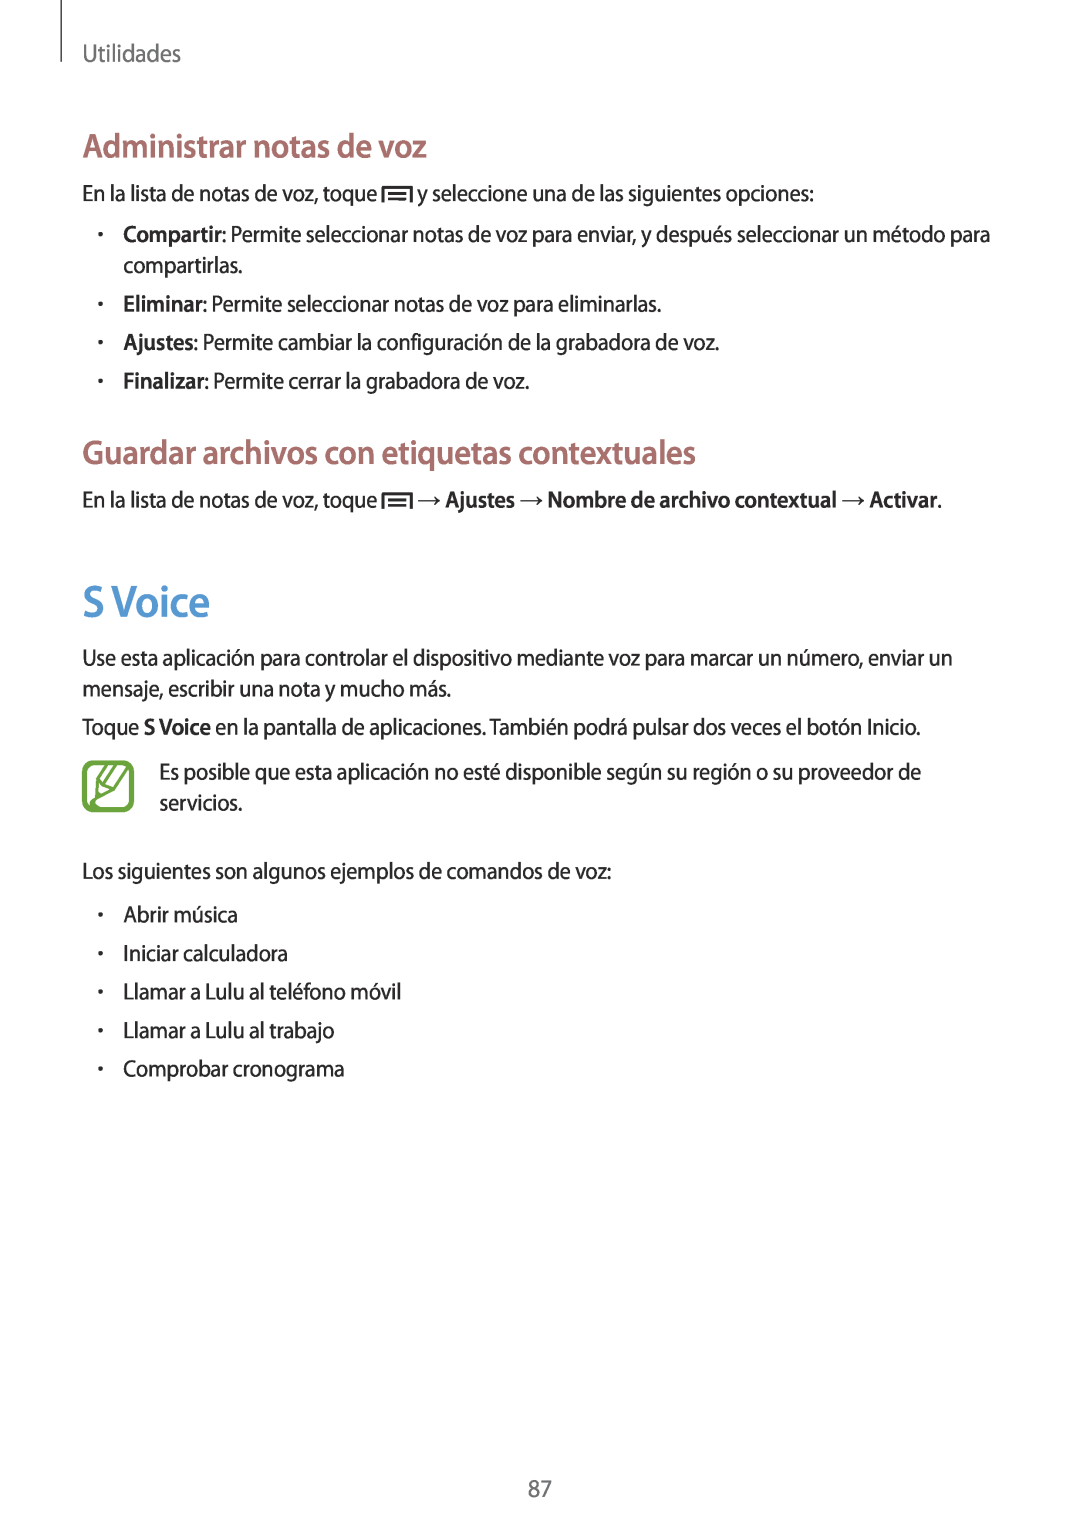 Samsung GT-S7275UWNPHE manual S Voice, Administrar notas de voz, Guardar archivos con etiquetas contextuales, Utilidades 